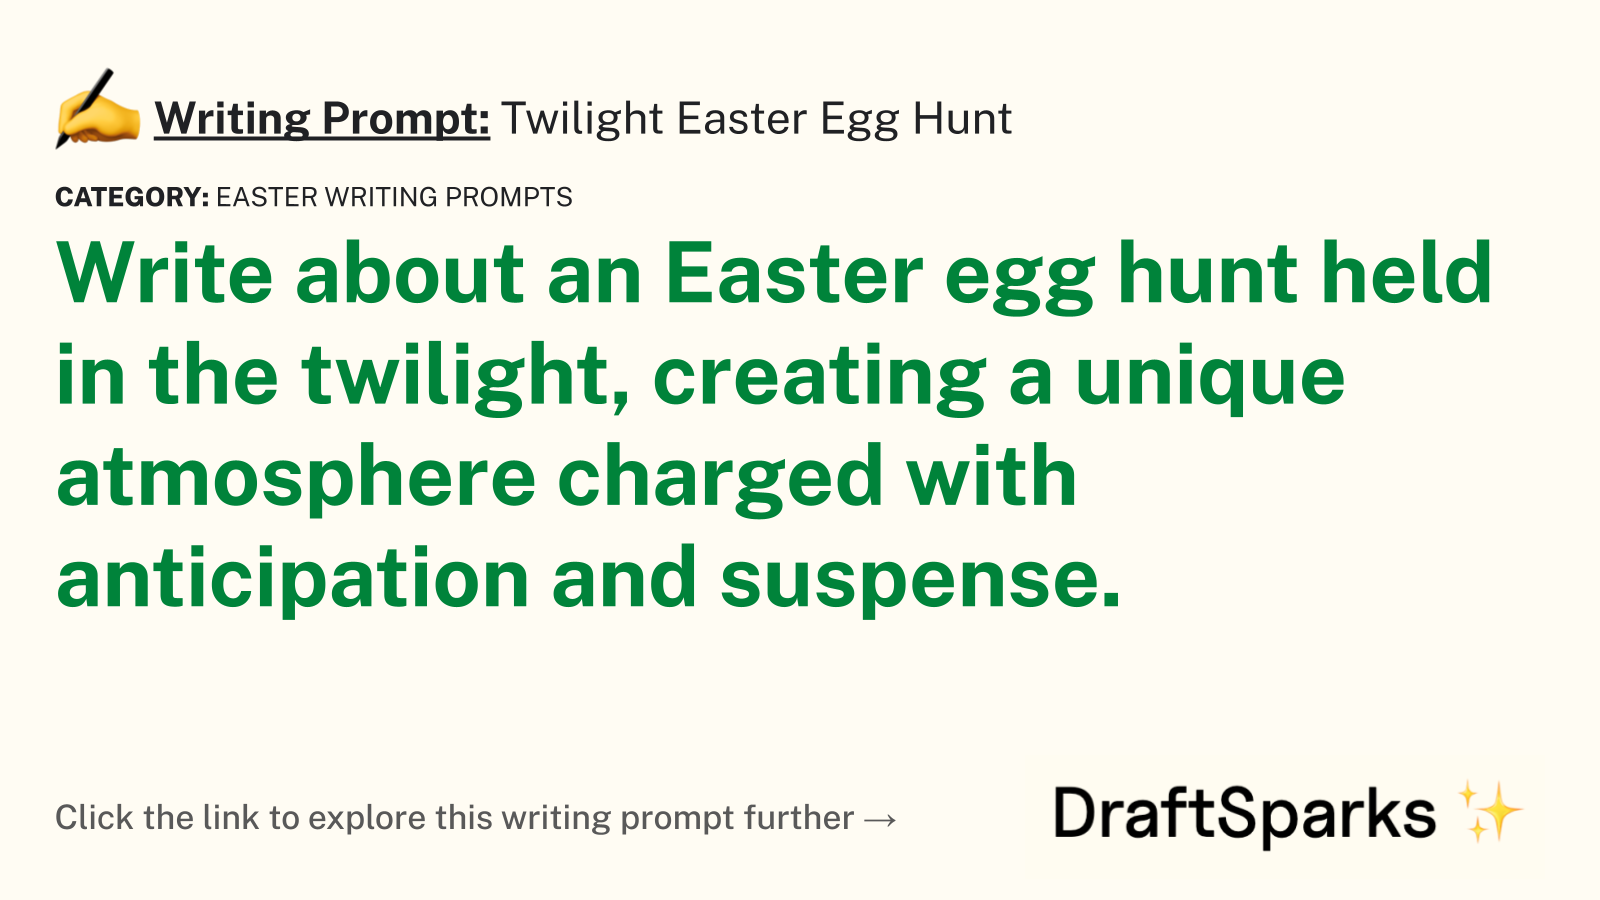 Twilight Easter Egg Hunt